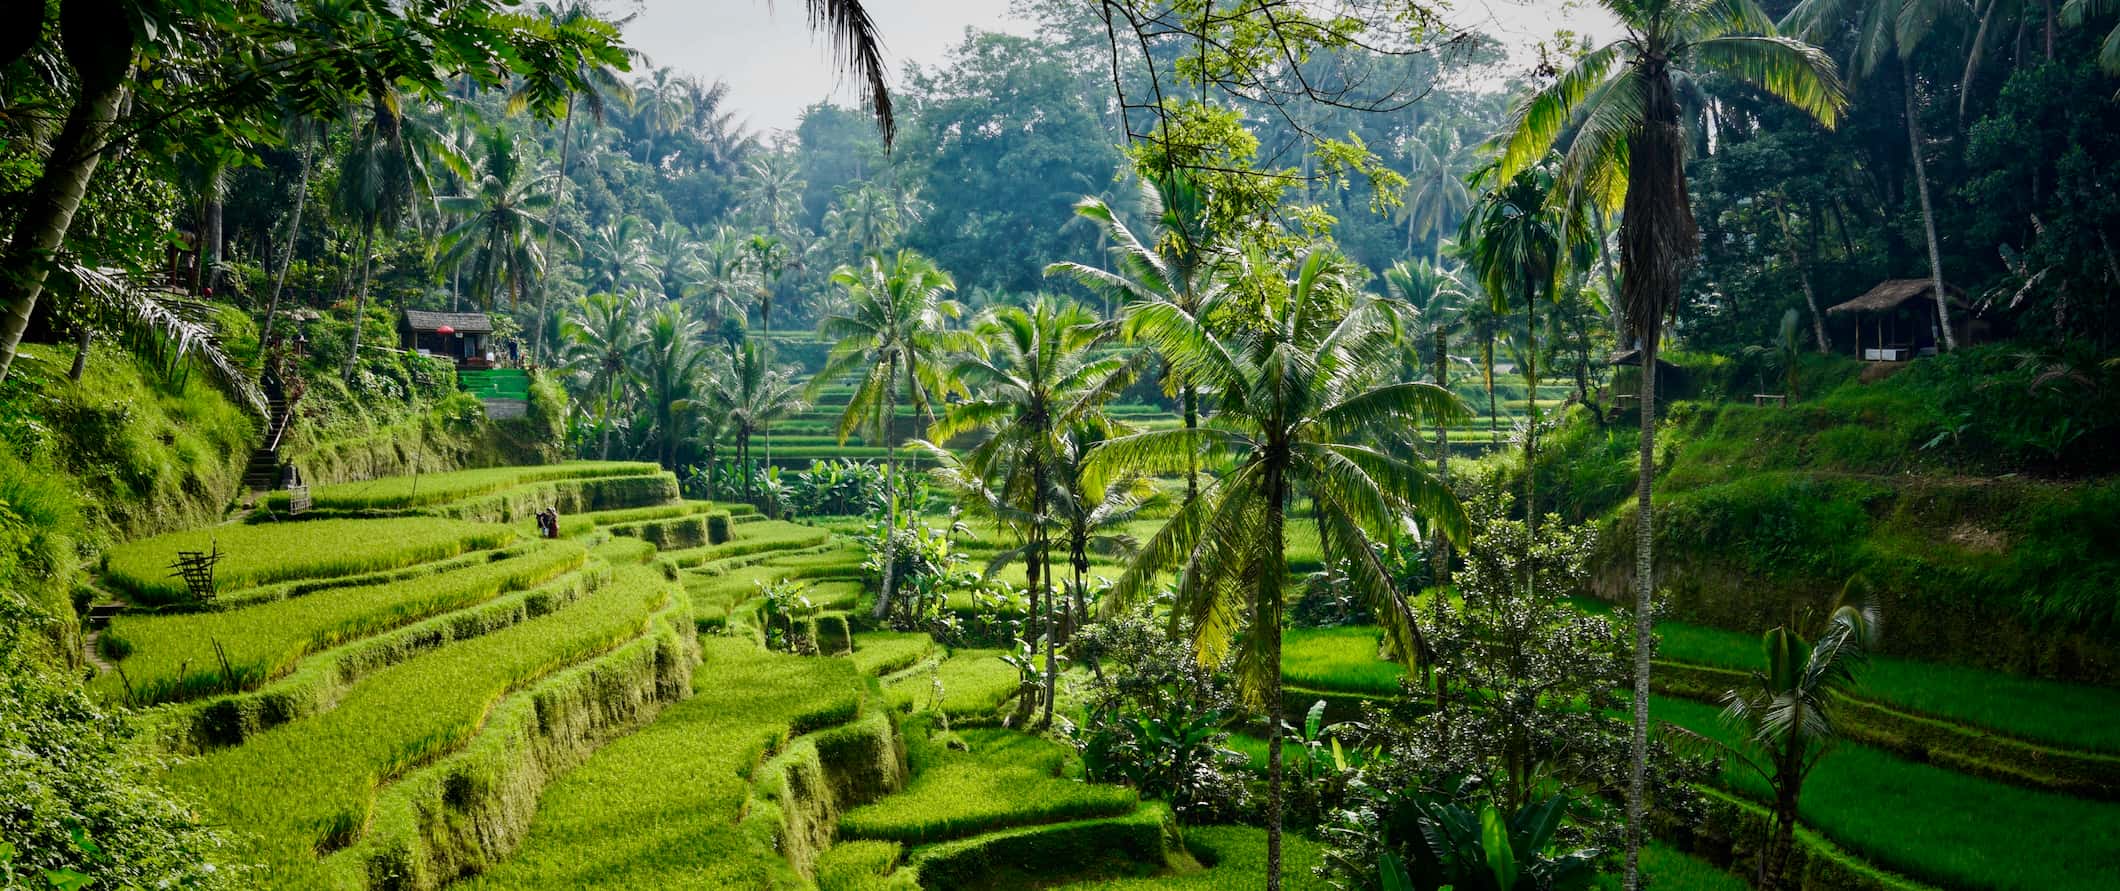 Campos de arroz verde luxuriante em Bali, Indonésia, cercados por uma selva alta